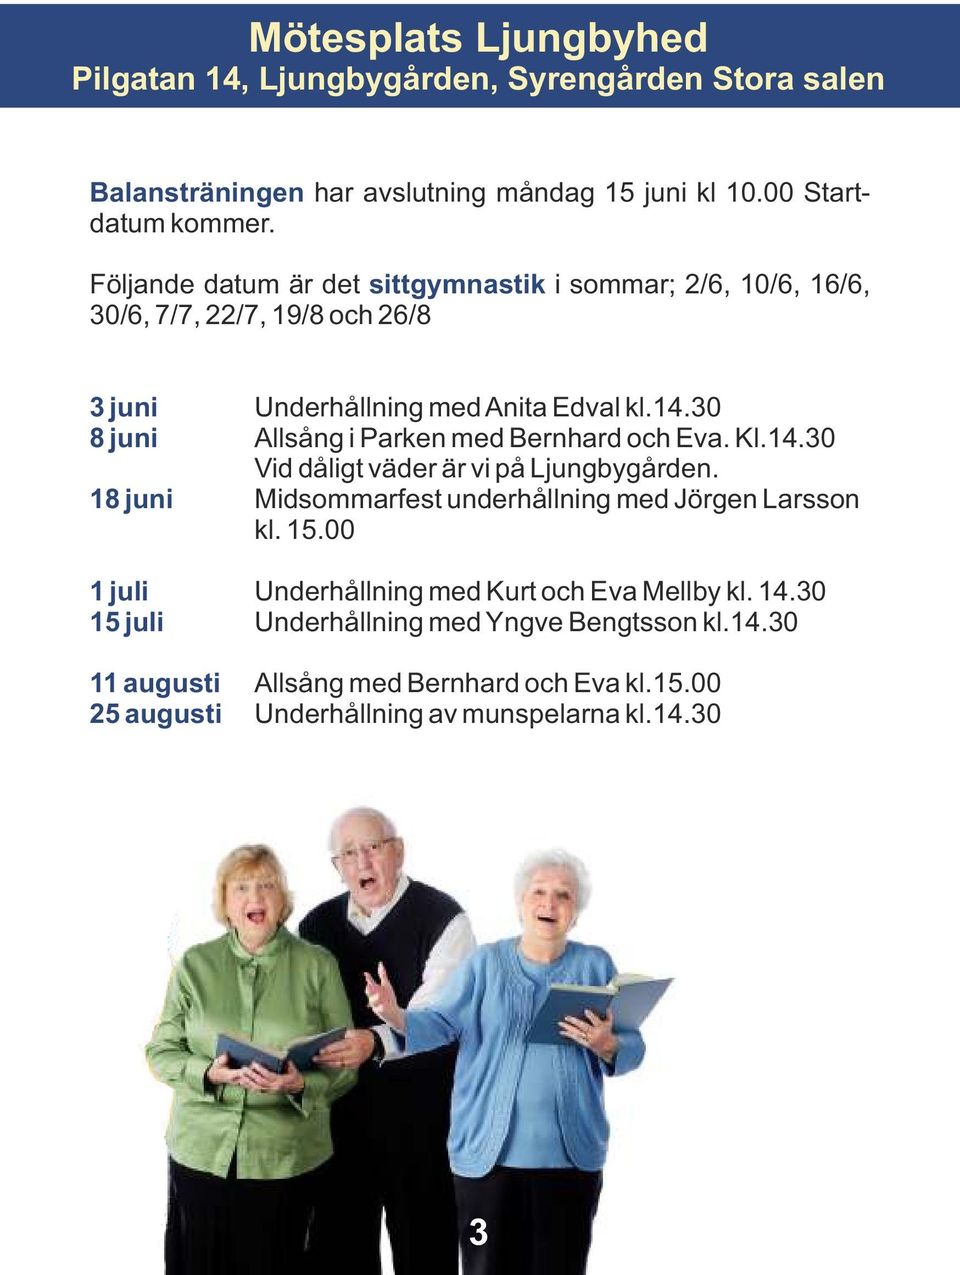 30 8 juni Allsång i Parken med Bernhard och Eva. Kl.14.30 Vid dåligt väder är vi på Ljungbygården. 18 juni Midsommarfest underhållning med Jörgen Larsson kl. 15.